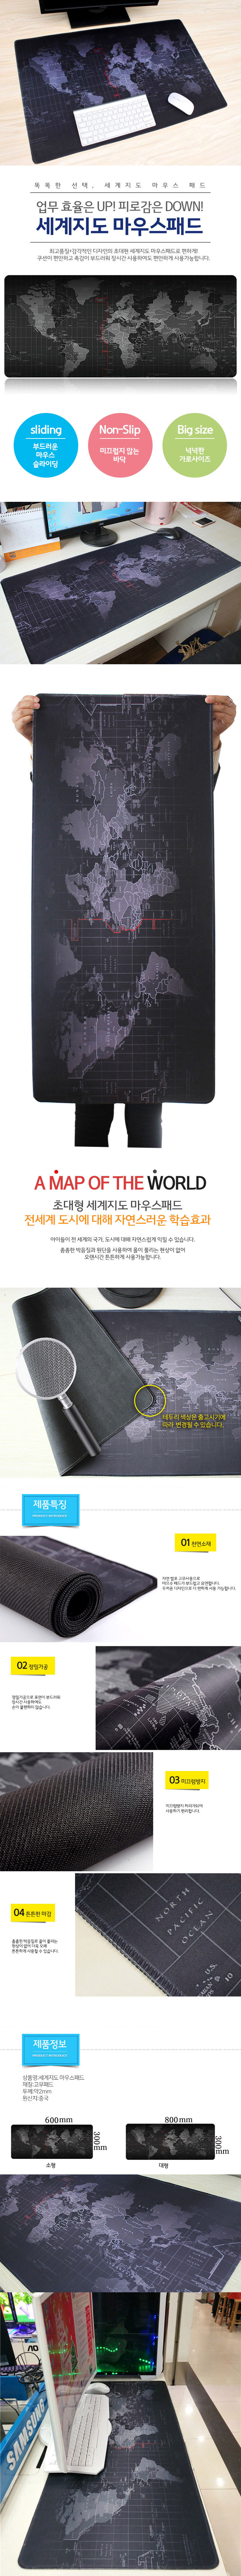 worldmap-long-pad.jpg